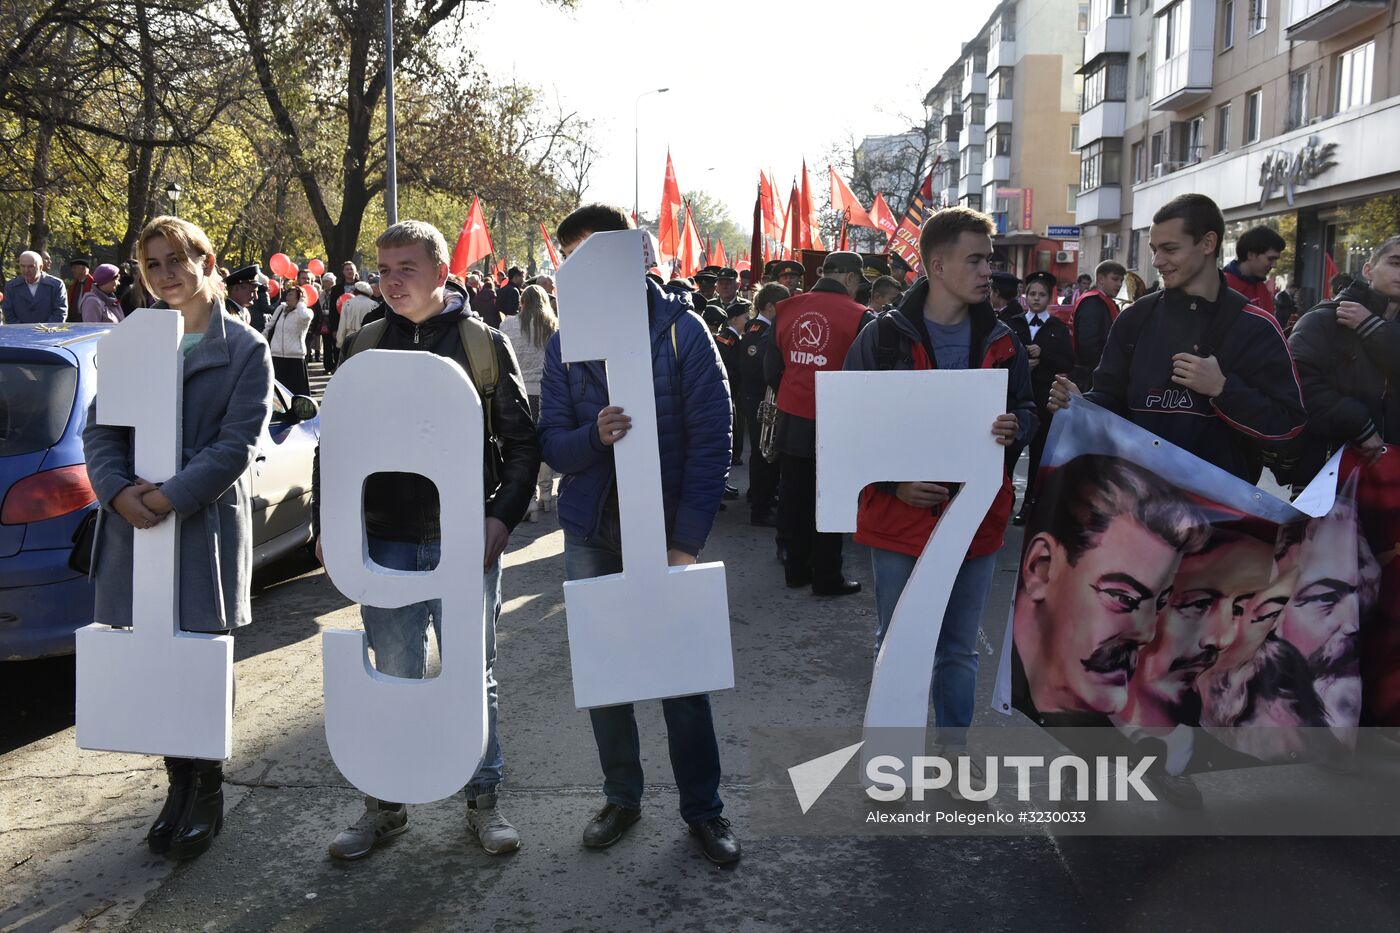 Celebrating 100th anniversary of October Socialist Revolution